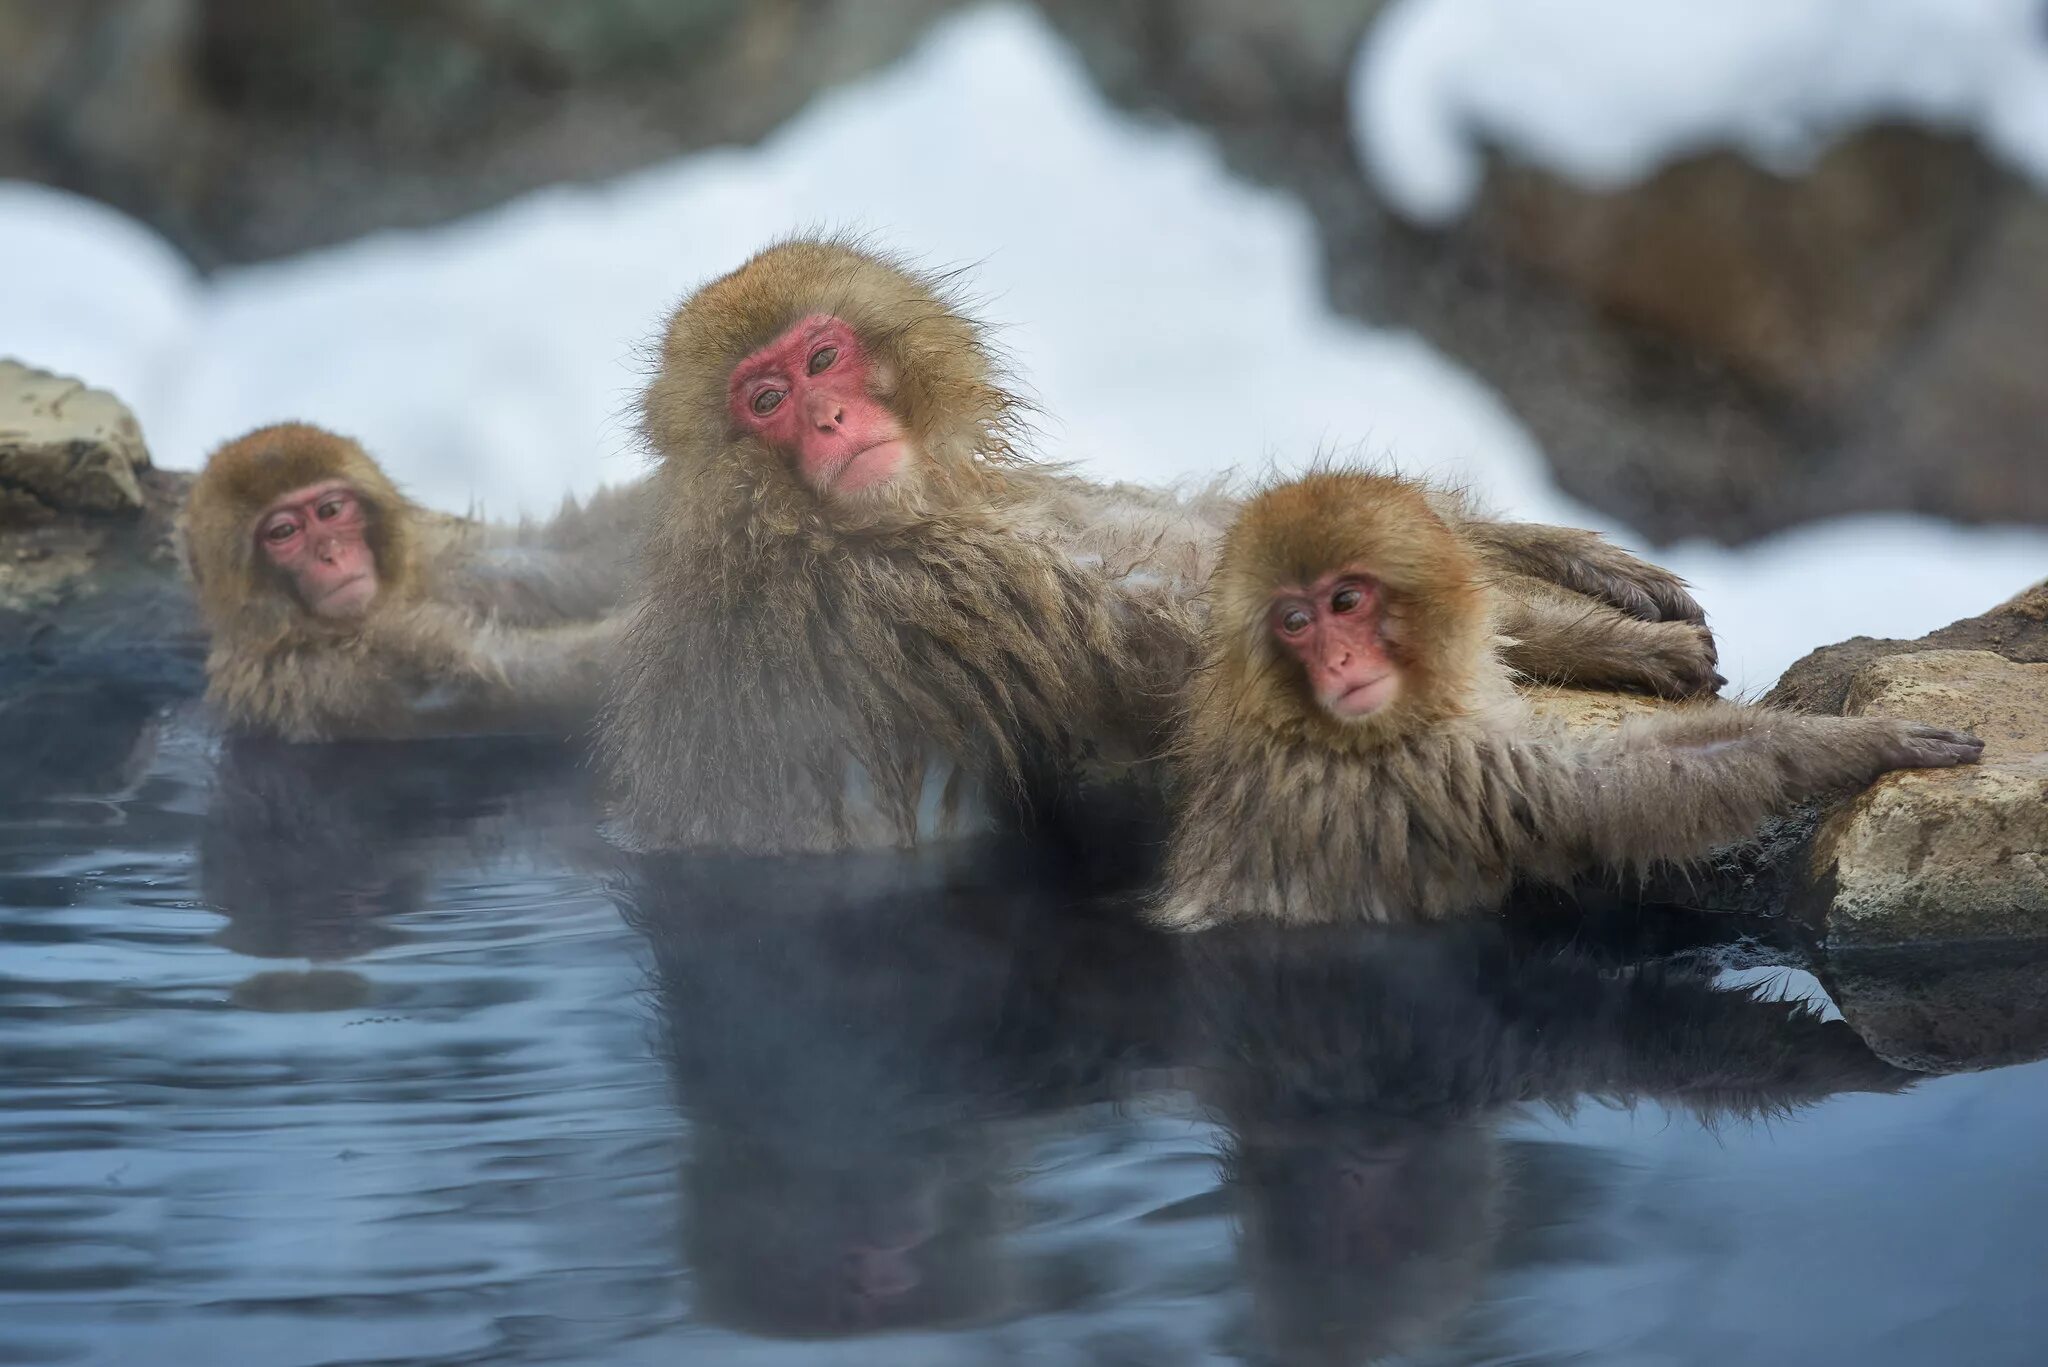 Парк Джигокудани Япония. Парк снежных обезьян Джигокудани. Макаки в горячих источниках в Японии. Горячие источники Япония макаки. Обезьяна купается в теплой воде